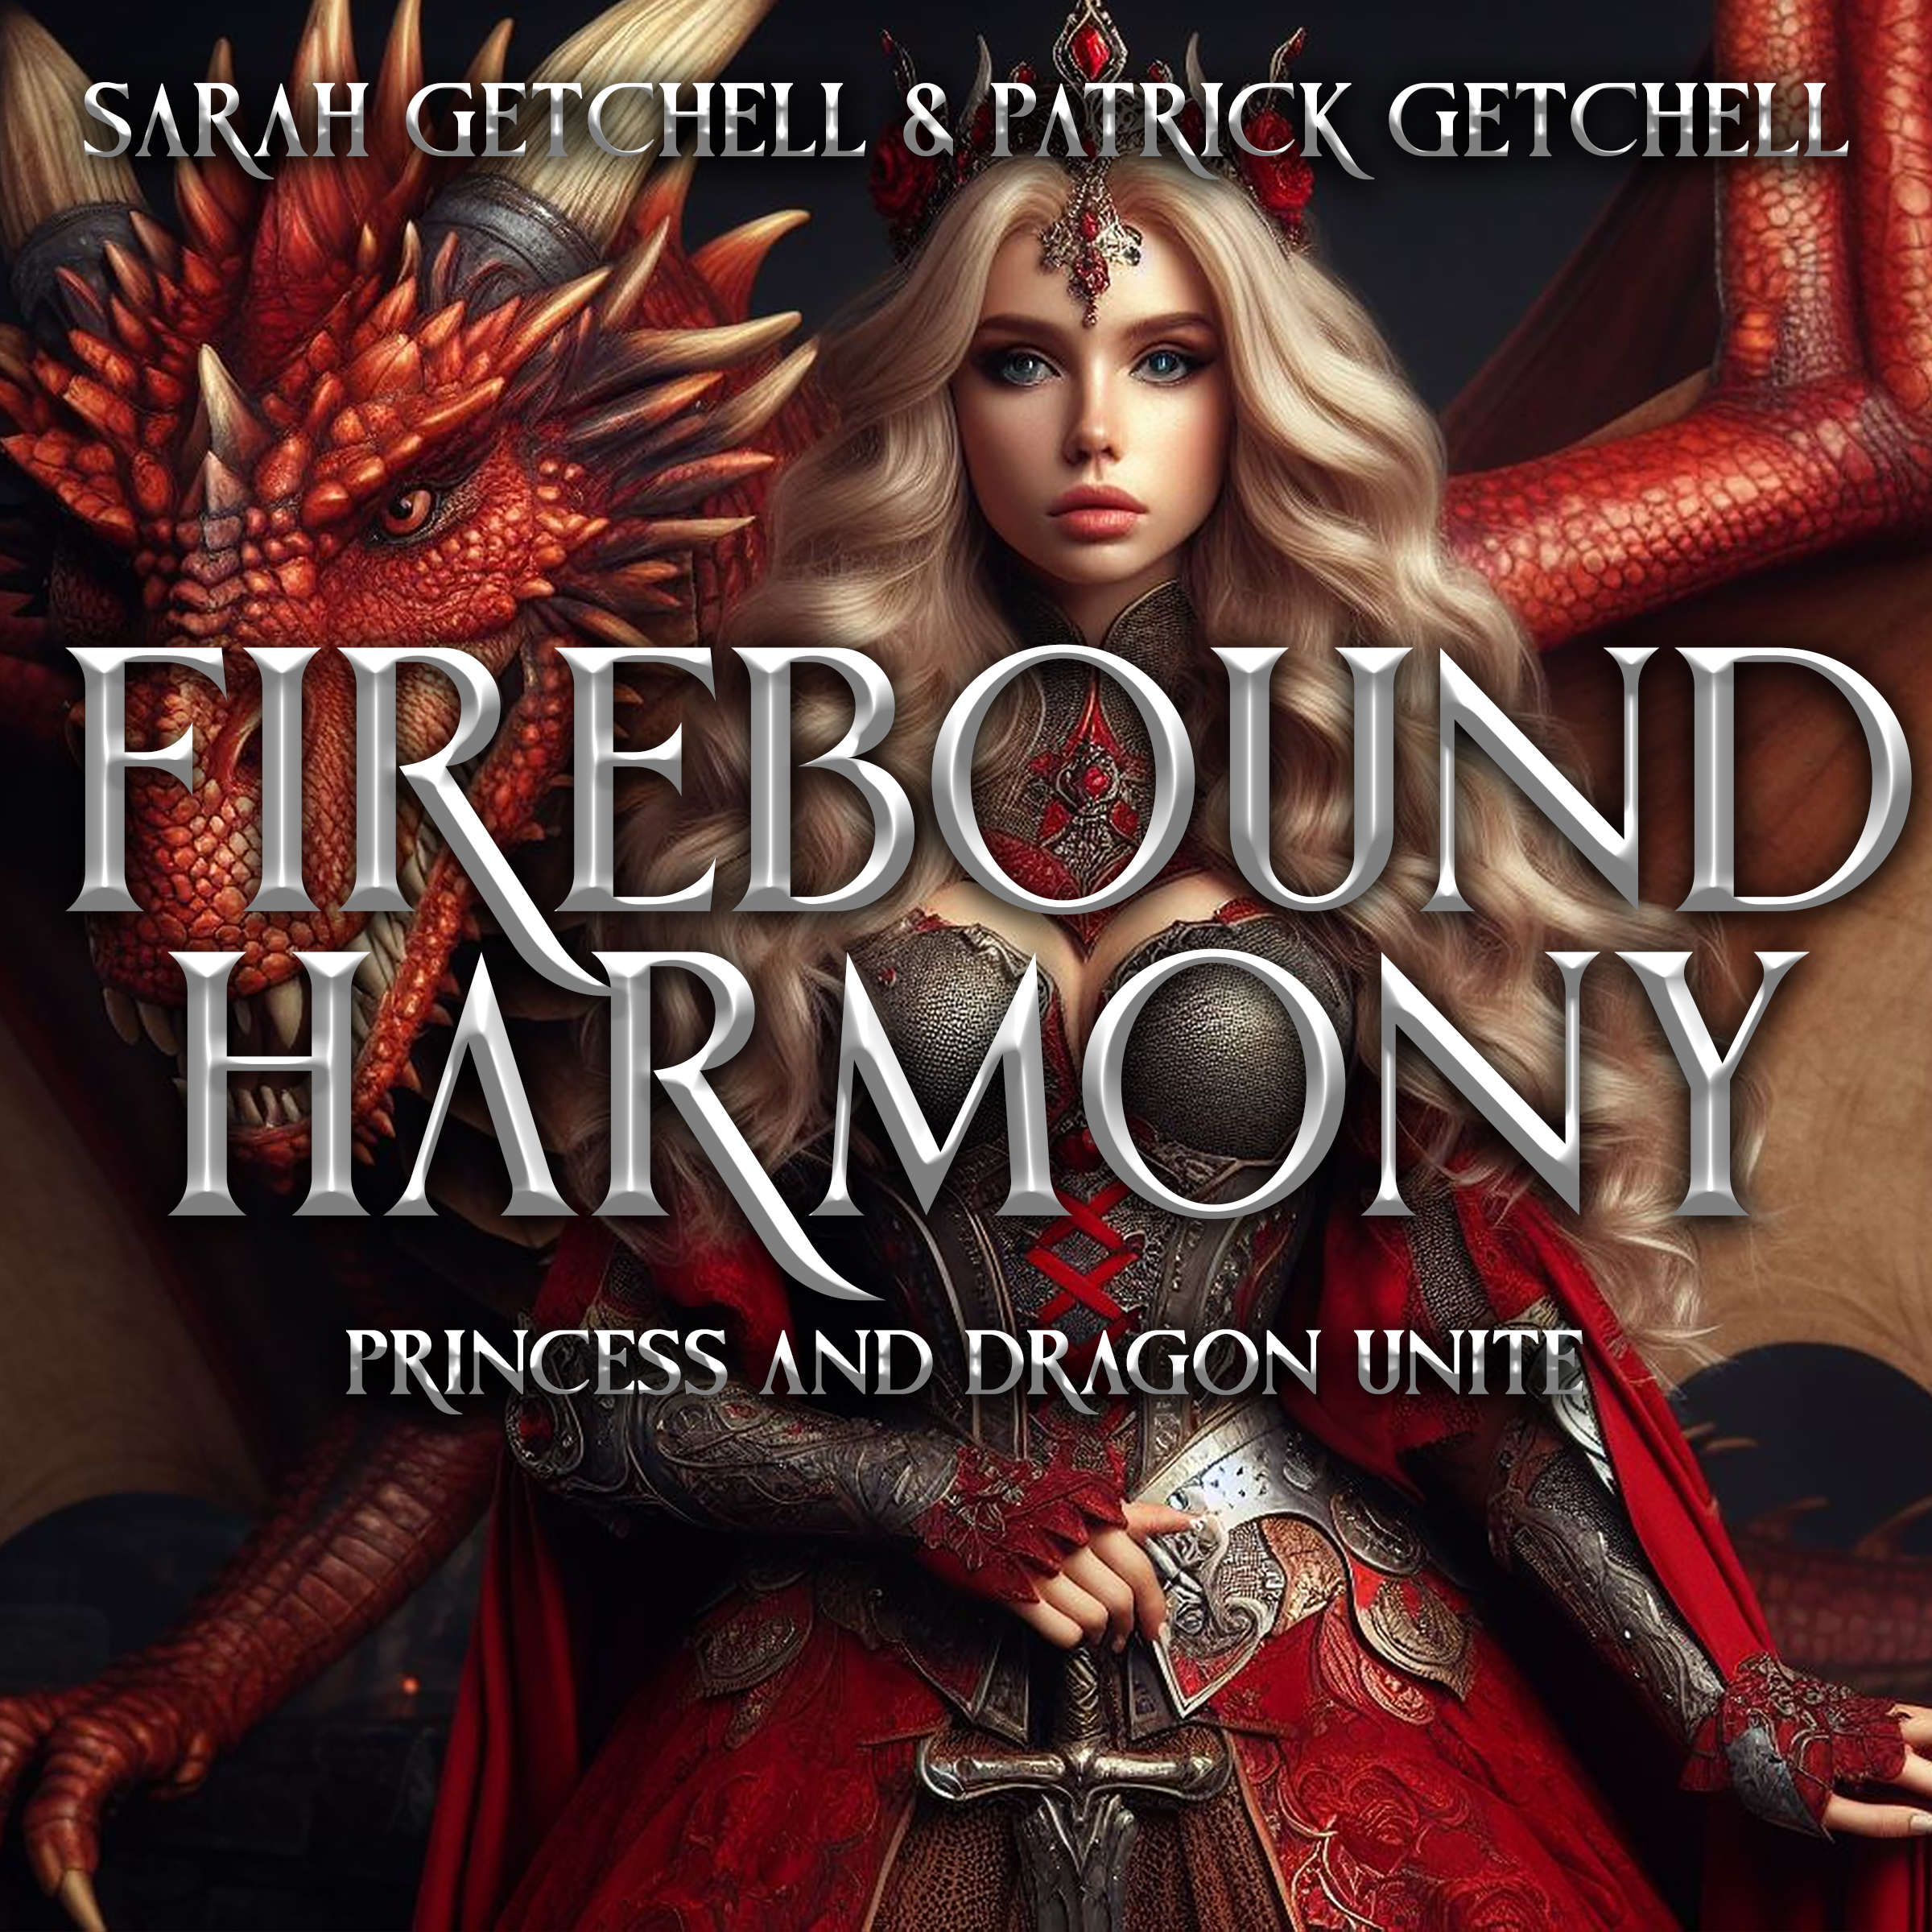 ثنائي الأب والبنت سارة وباتريك جيتشيل يصدران كتاب الخيال “Firebound Harmony”